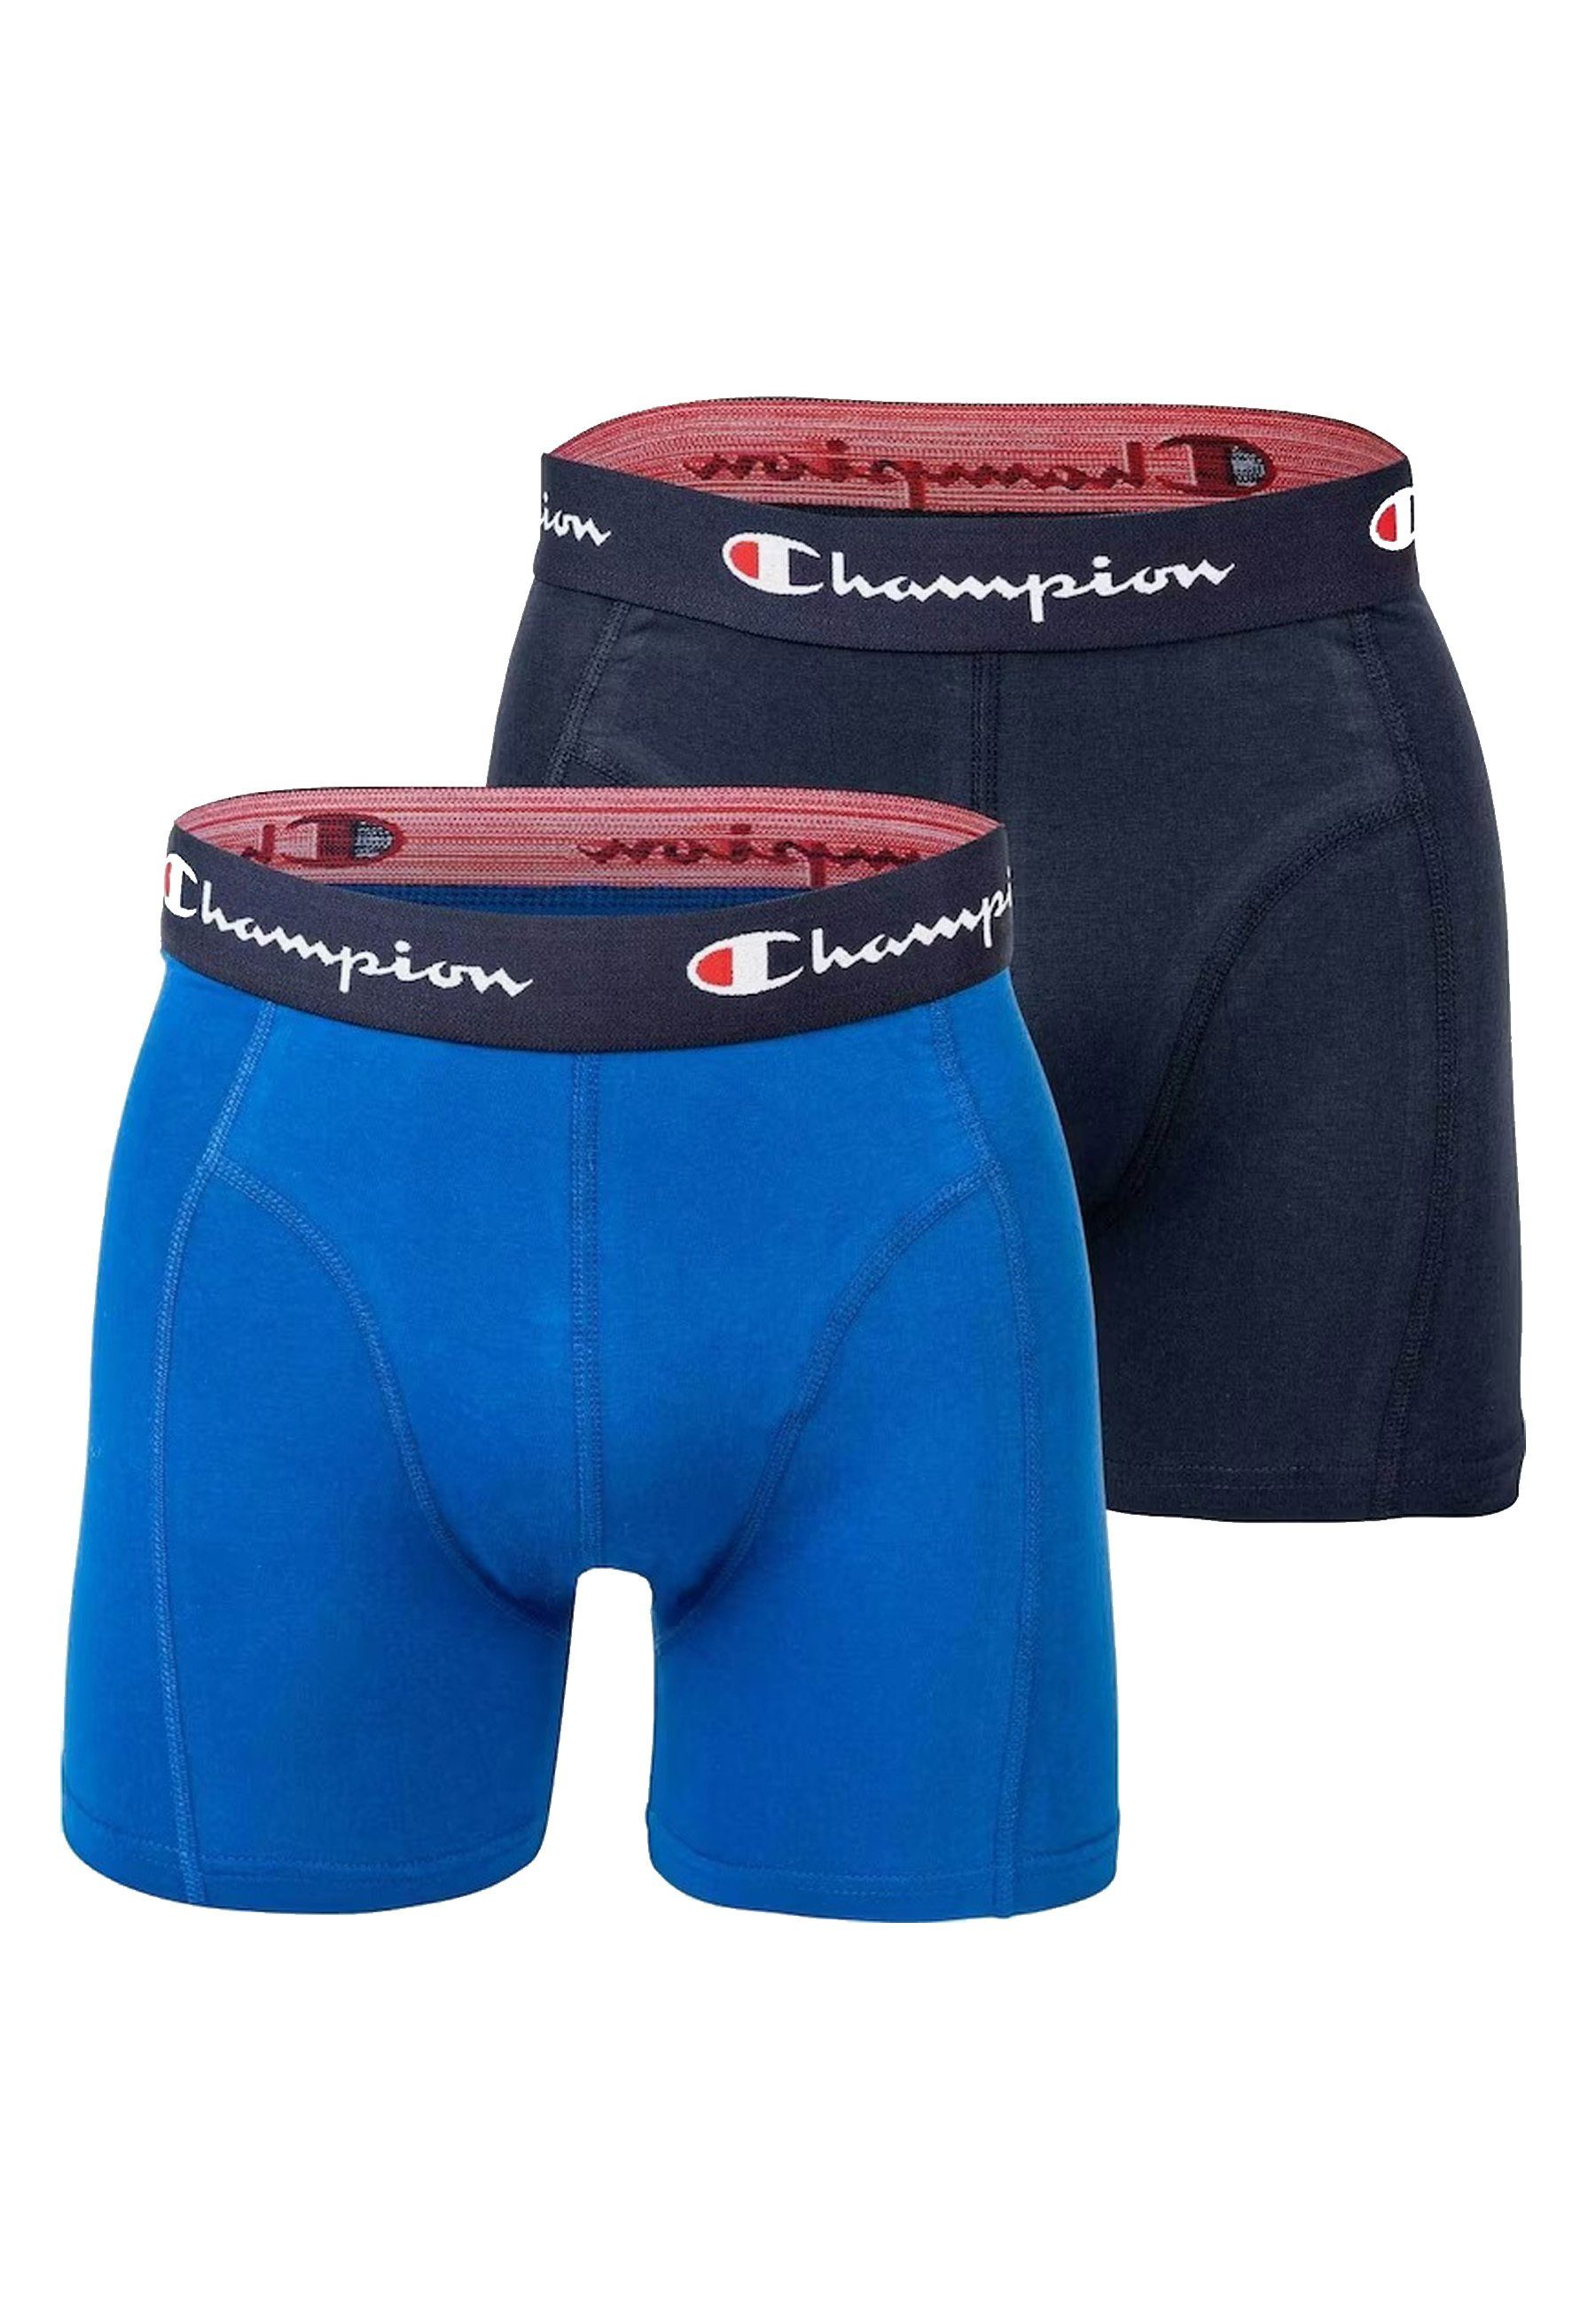 Champion Doppelpack Basic Boxershorts Boxershorts blau Trunks